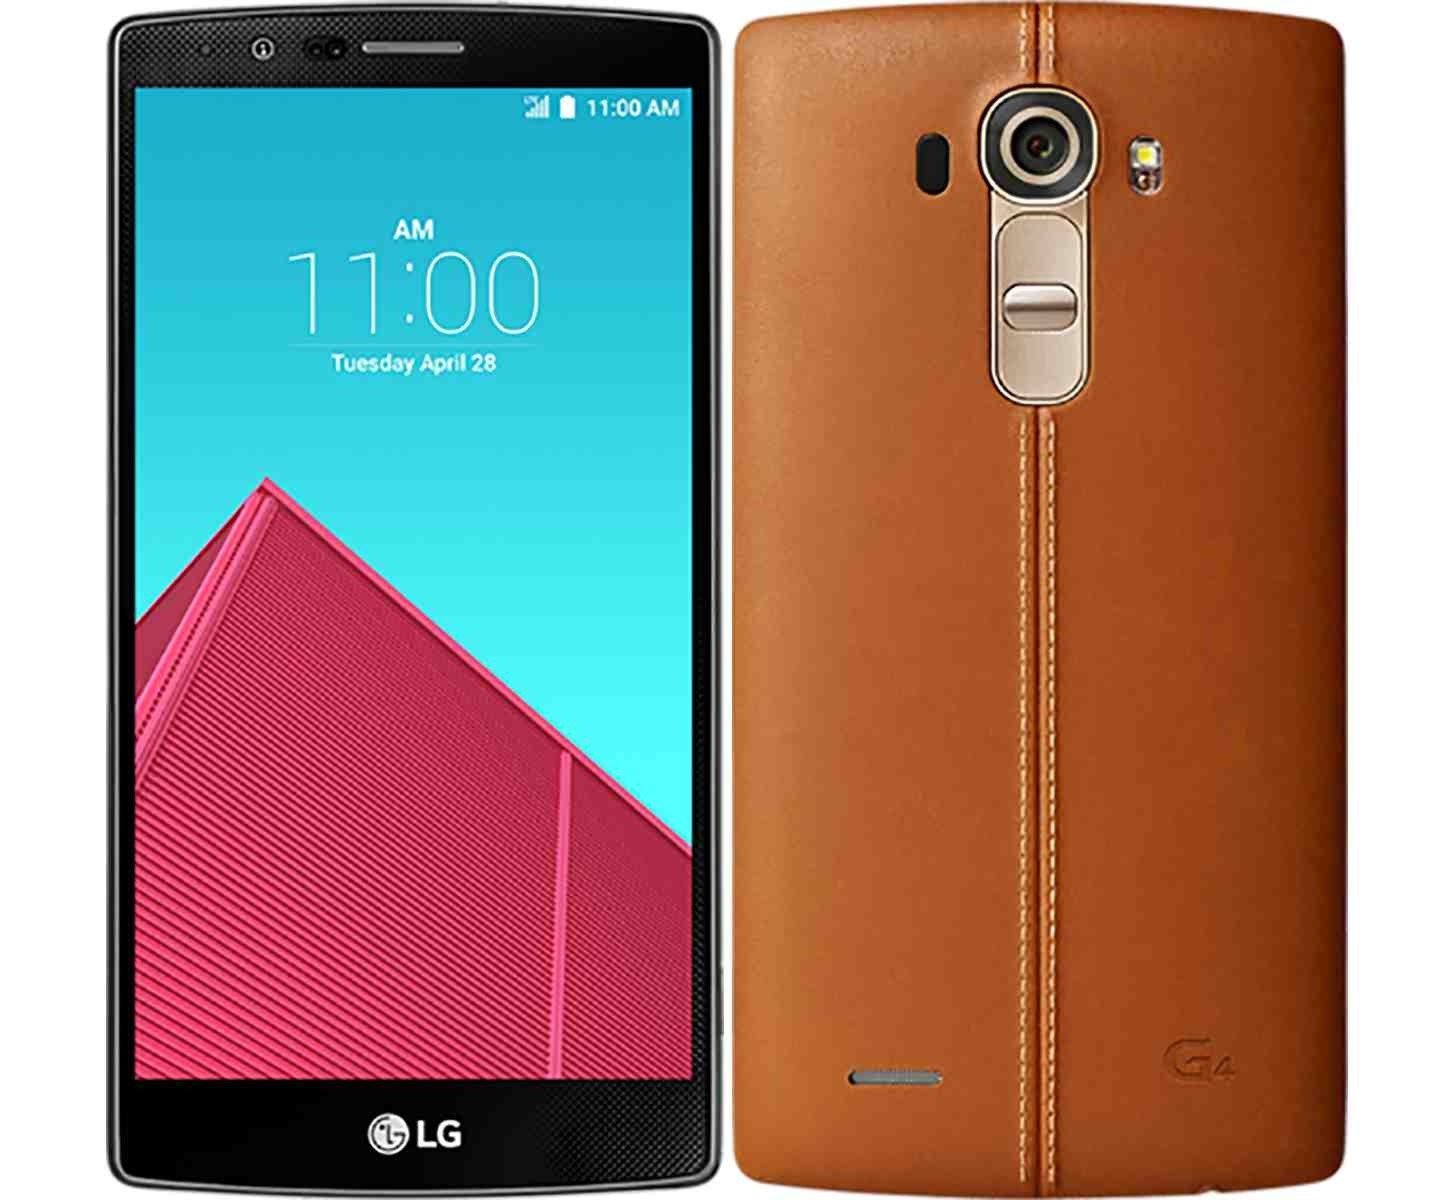 LG G4 scheda tecnica, recensione e opinioni - PhonesData